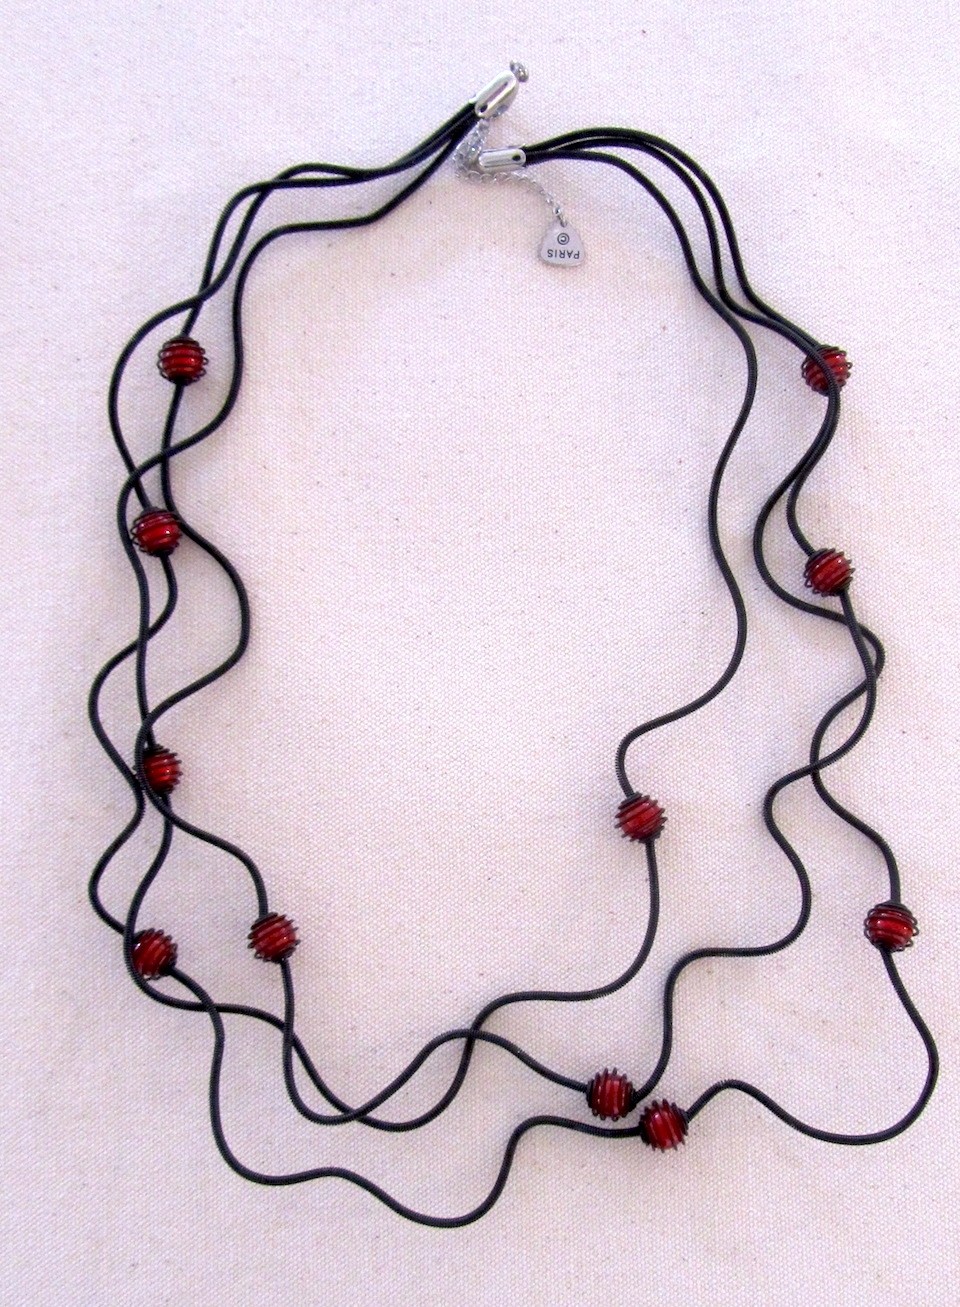 Collier PERLES EN CAGE rouges, no 100, de l'artiste Sandrine Giraud, Ce bijou modulable, toujours original, marie avec élégance la grâce des perles avec l’originalité des lignes résolument contemporaines.